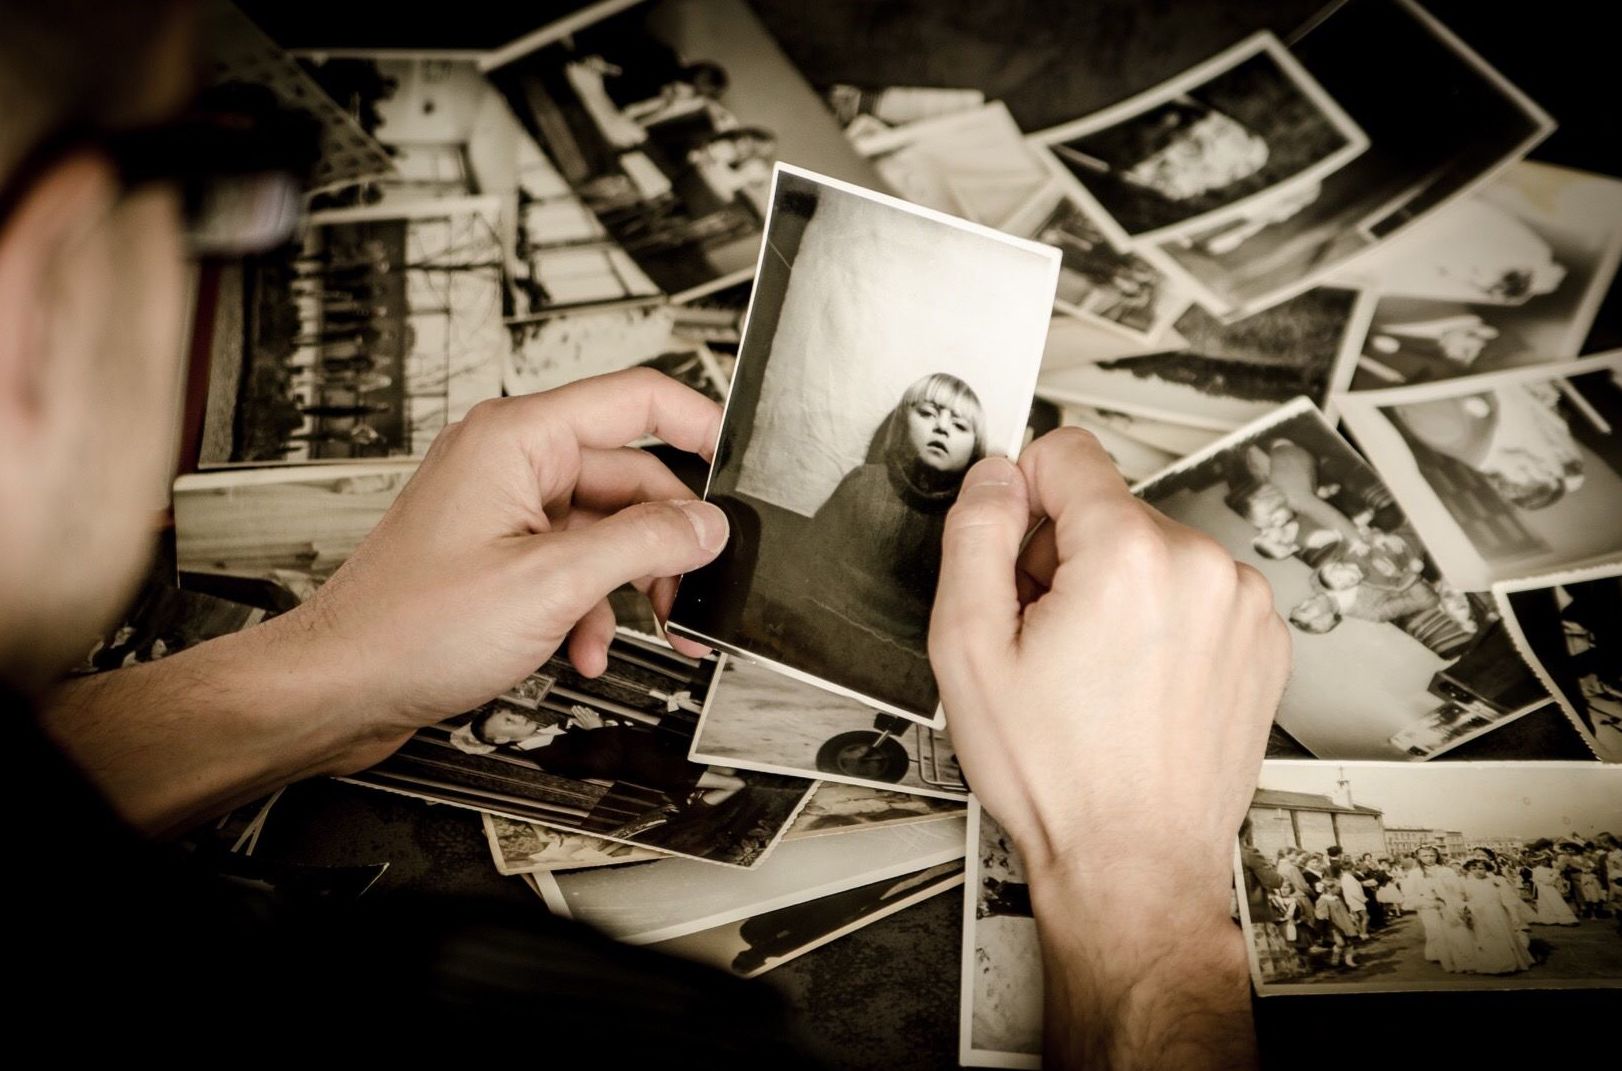 Recordar perfectamente algo que nunca ha pasado: así es como funcionan los falsos recuerdos